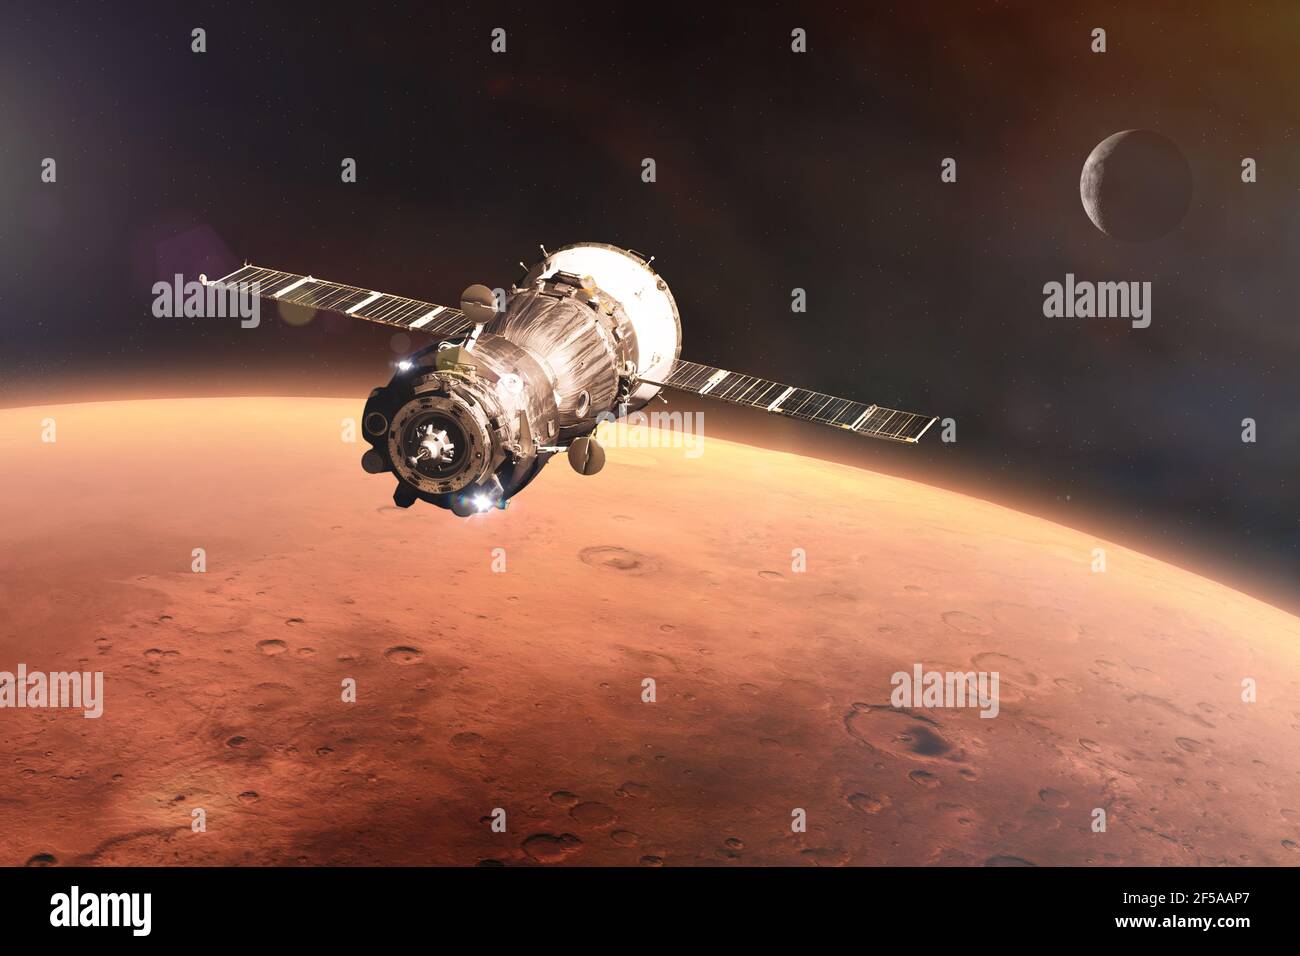 Un vaisseau spatial est lancé dans l'espace sur fond de planète Mars. Éléments de cette image fournis par la NASA. Banque D'Images